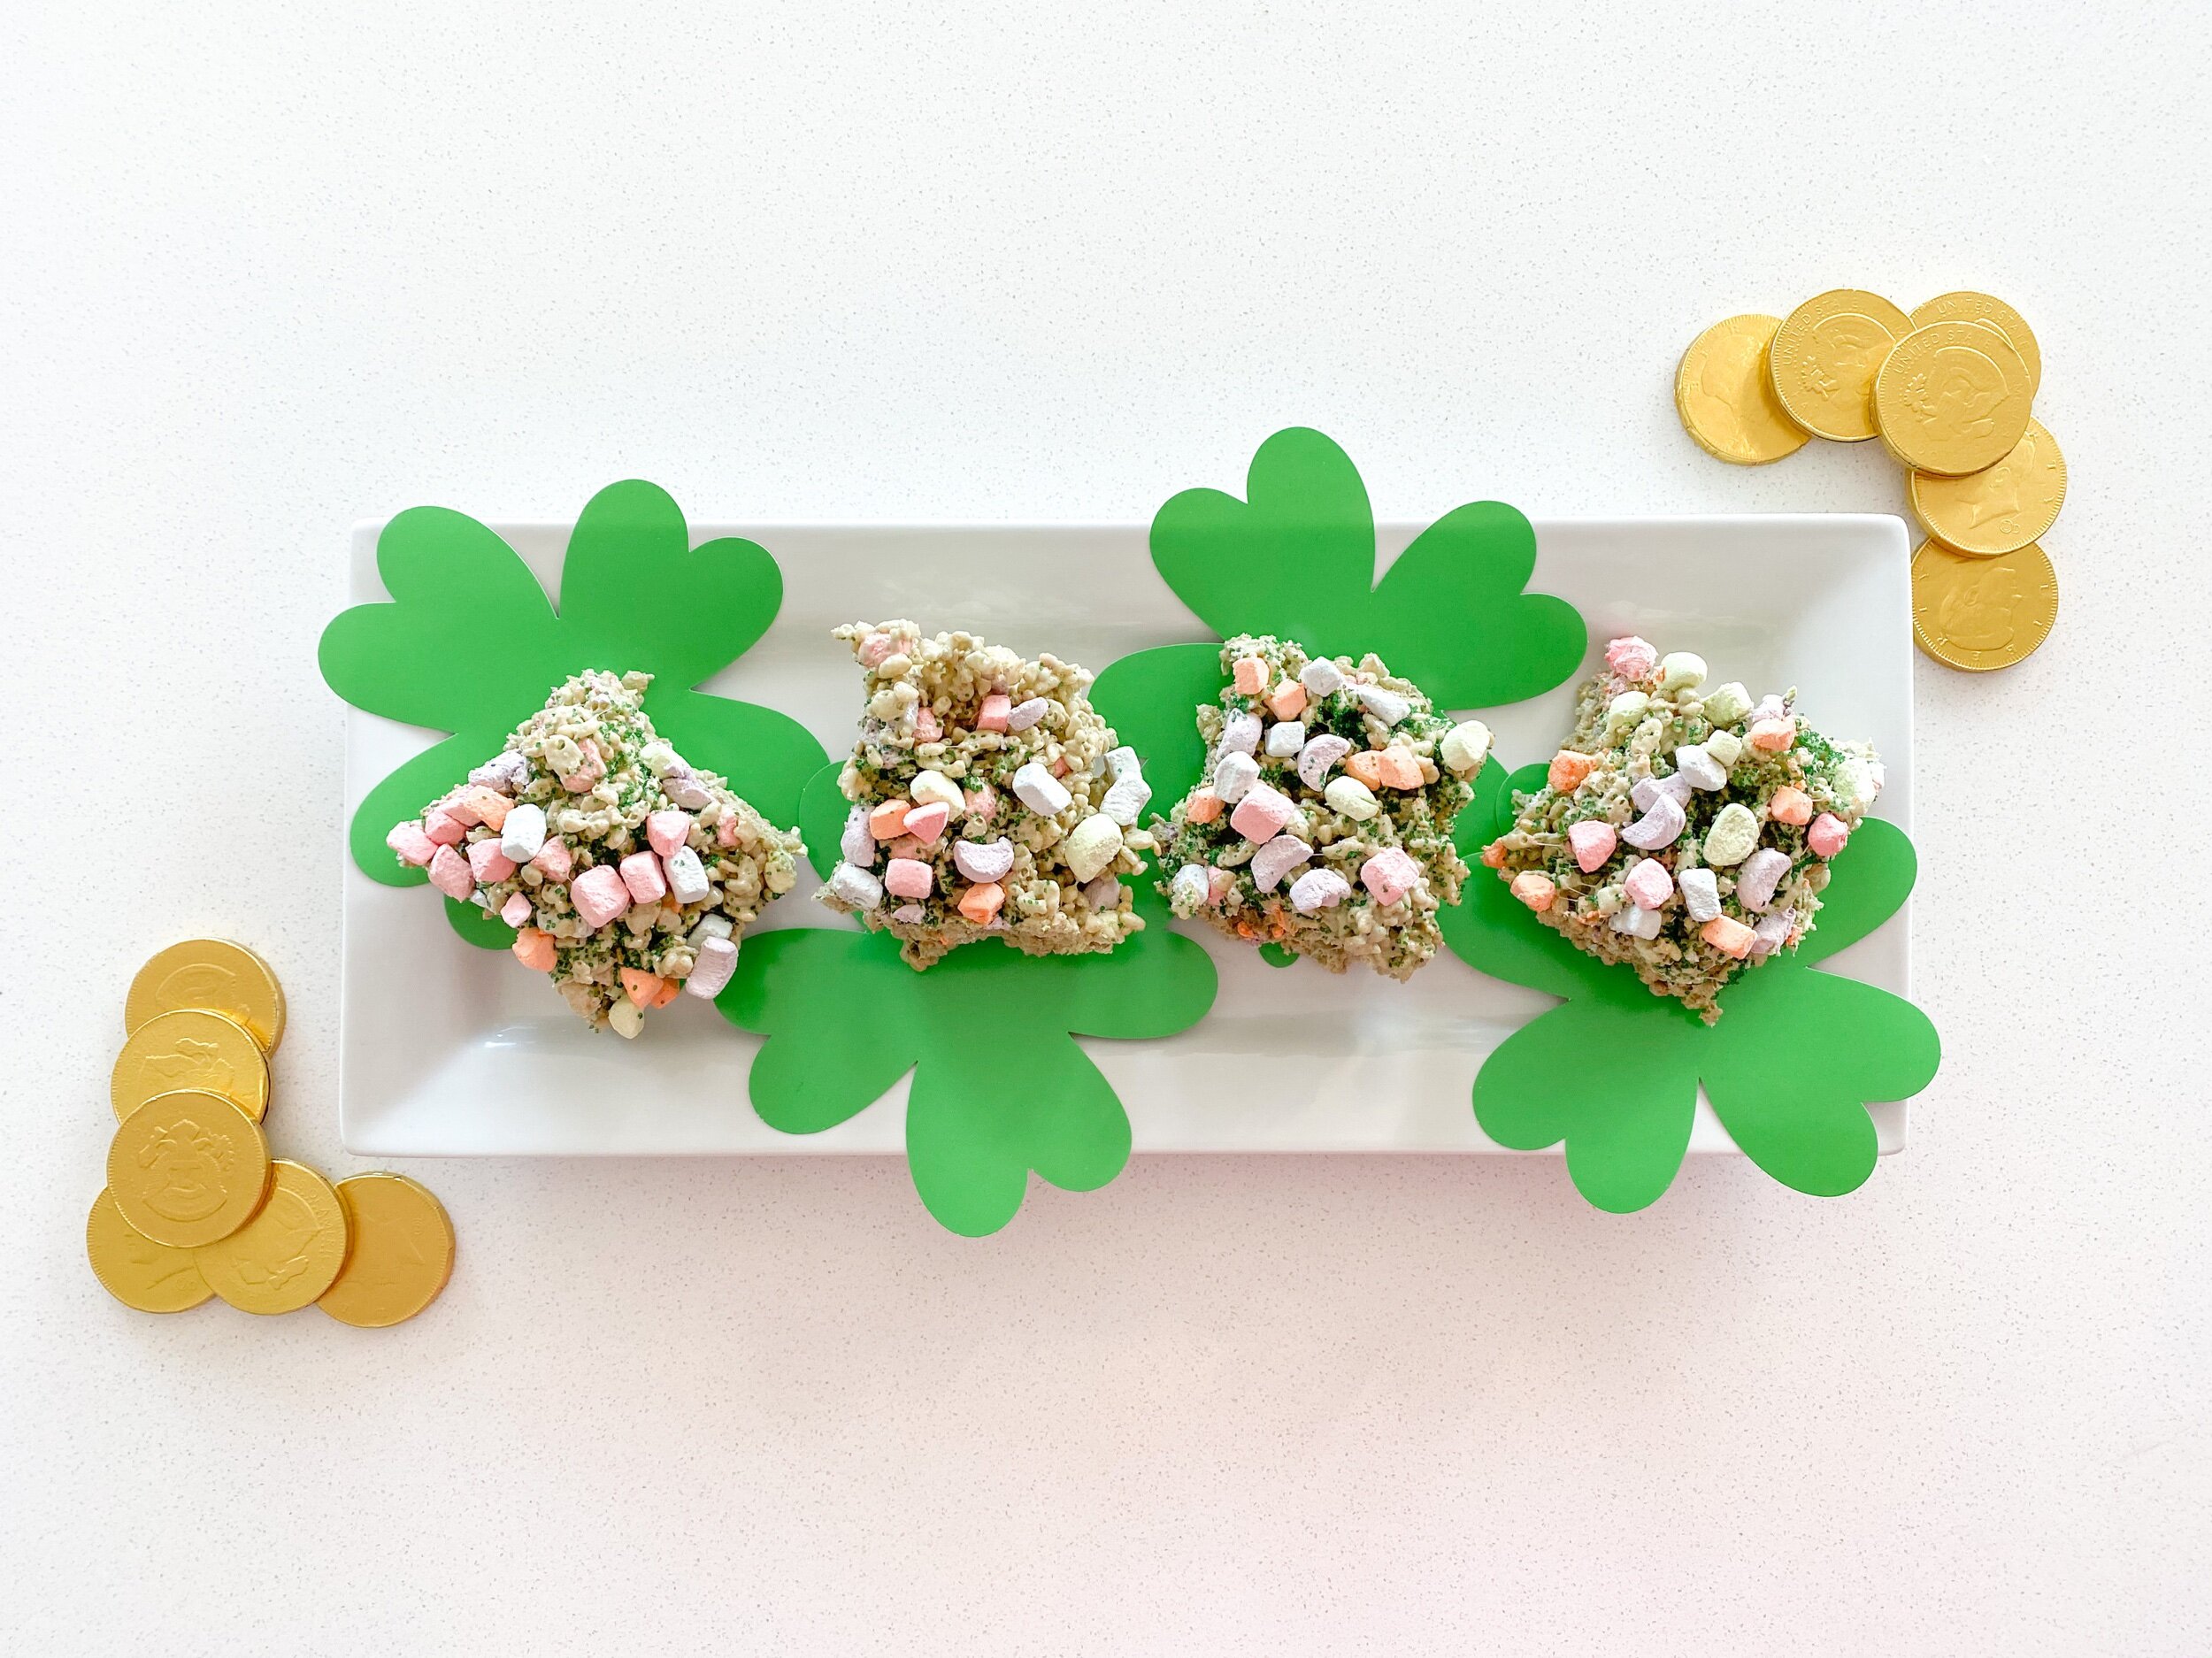 Taryn Into Travel Food Recipes Lucky Charms Rice Krispy Treats St Patricks Day Treats Blog Snacks